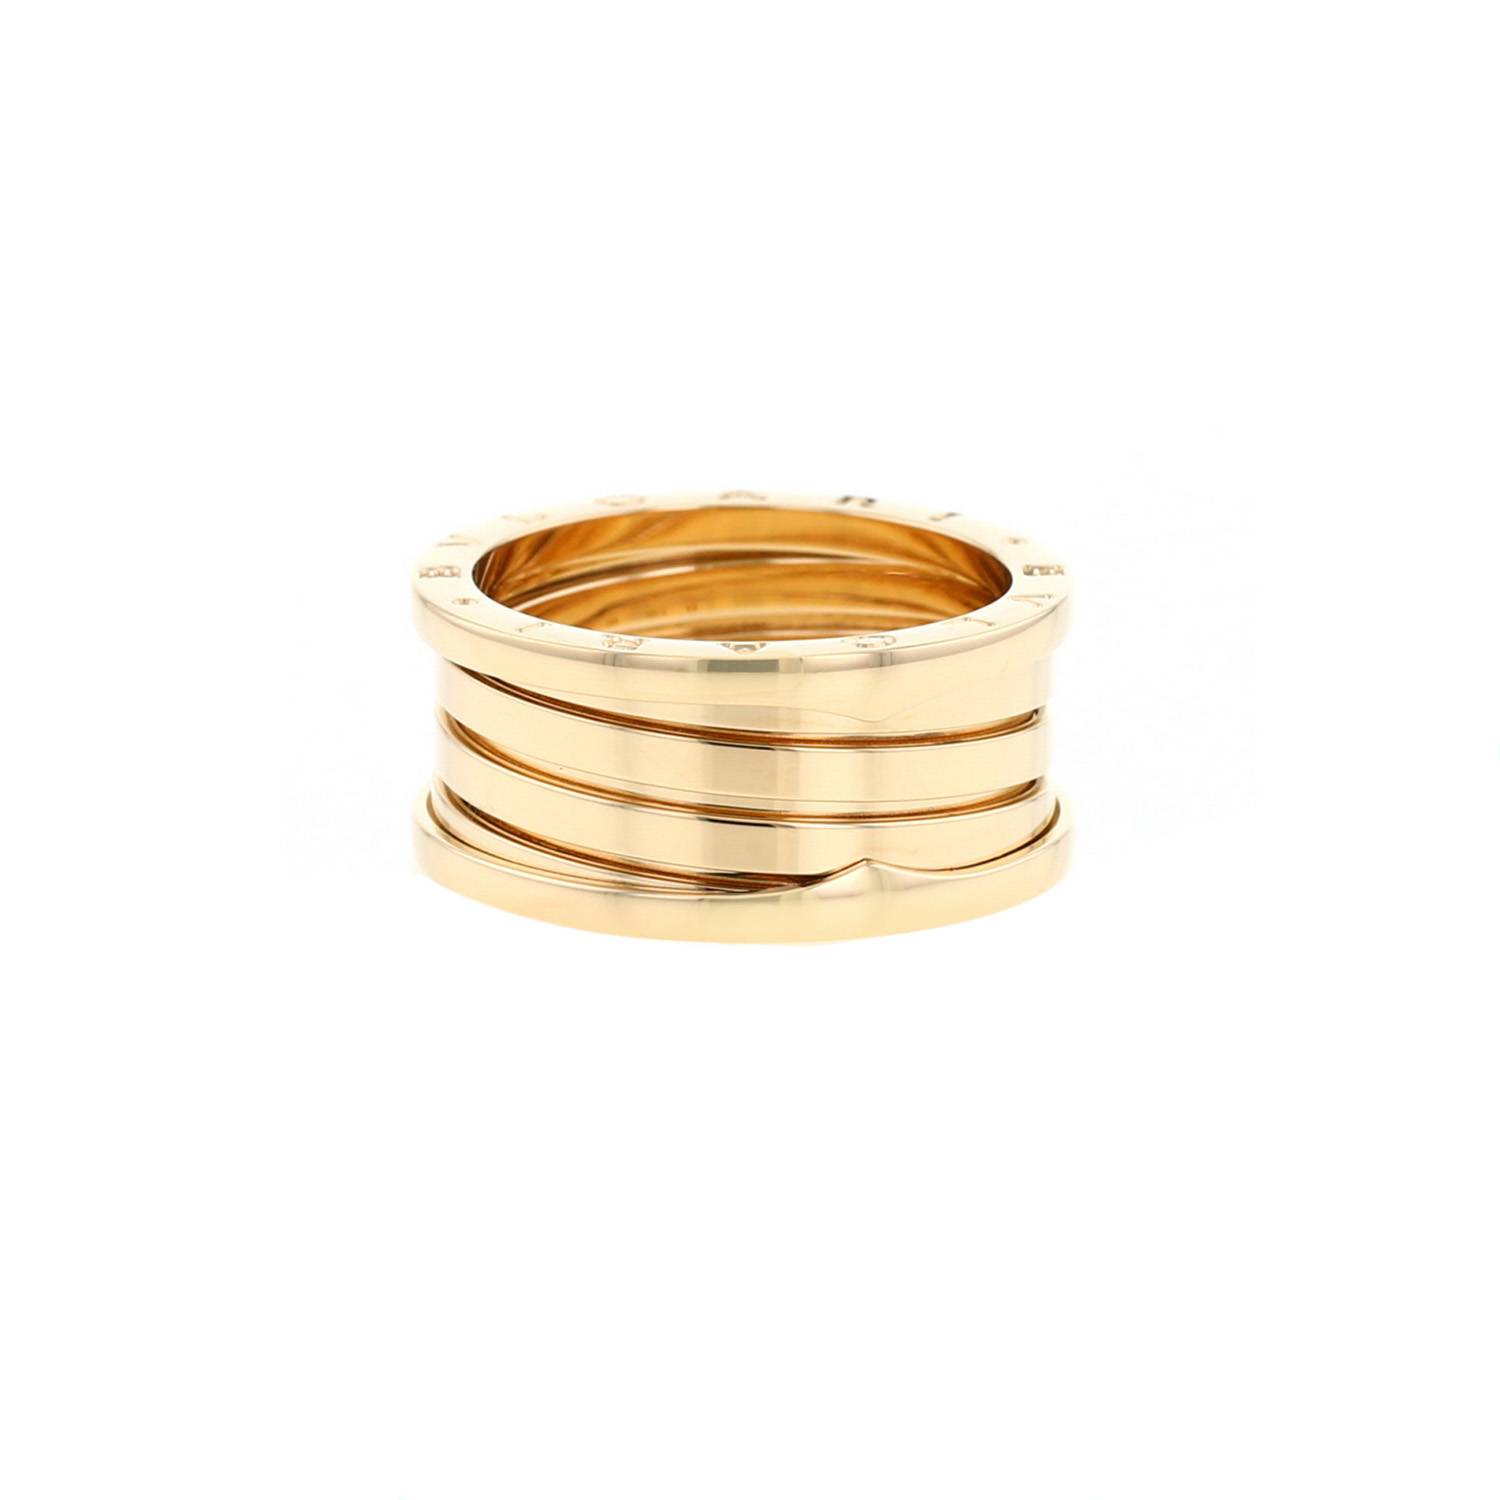 00pp bulgari b zero1 medium model ring in yellow gold size 64